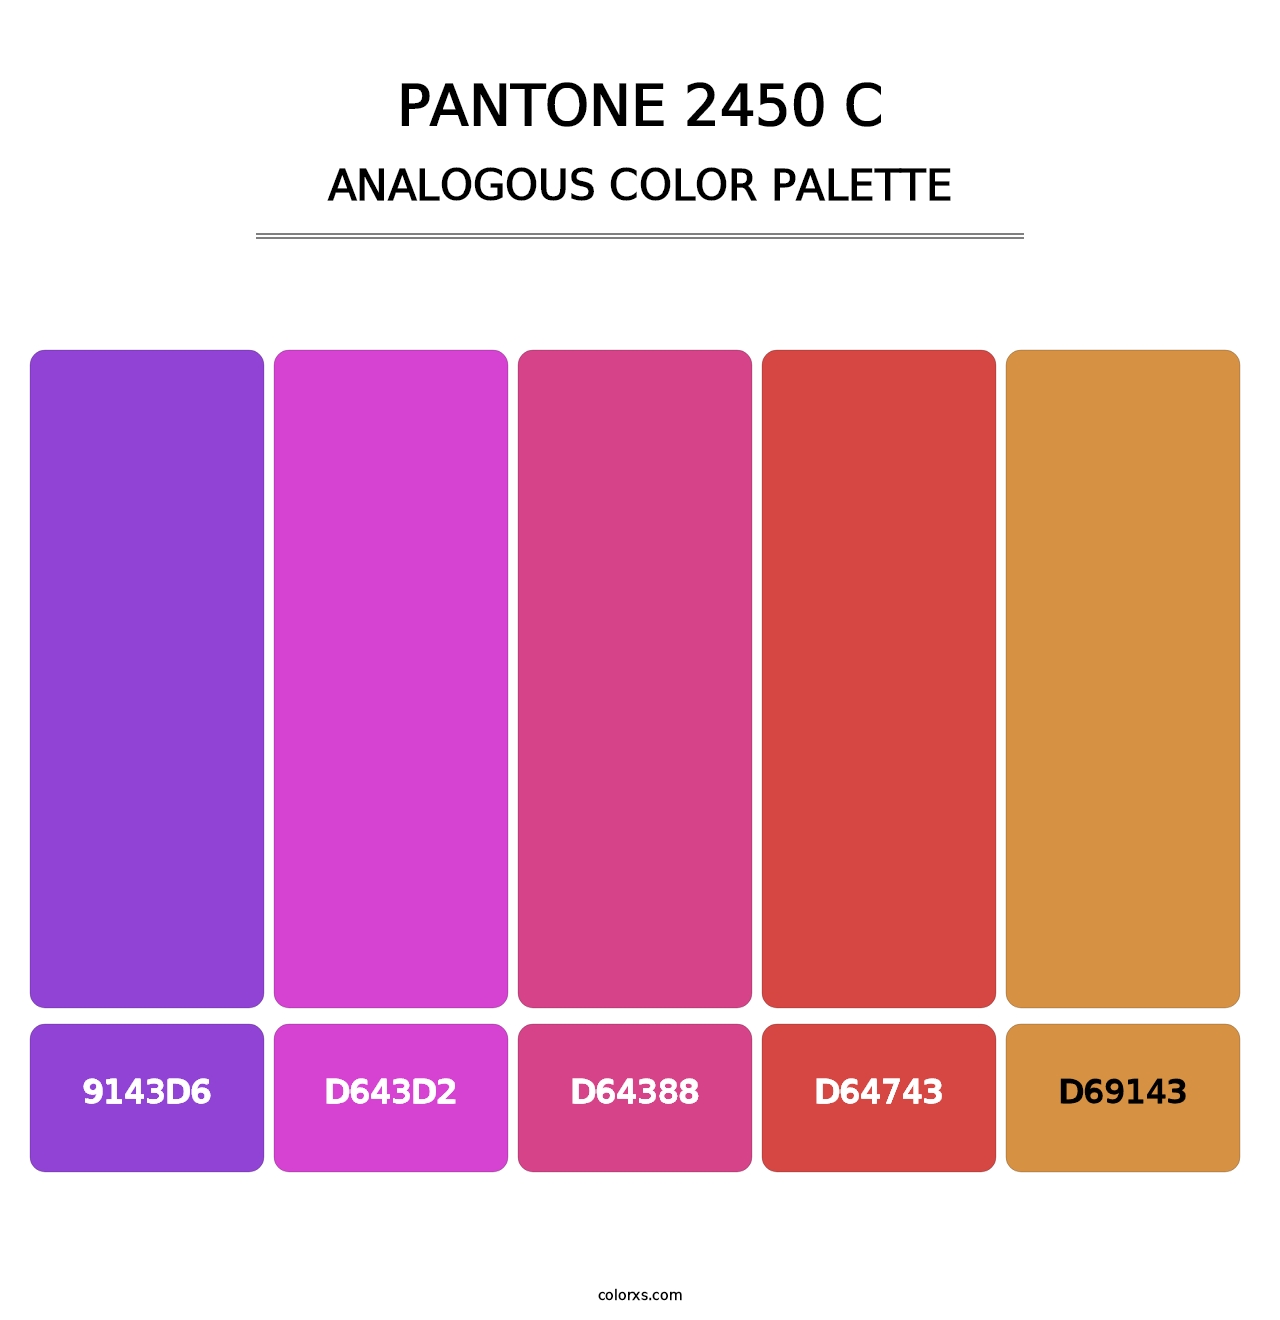 PANTONE 2450 C - Analogous Color Palette